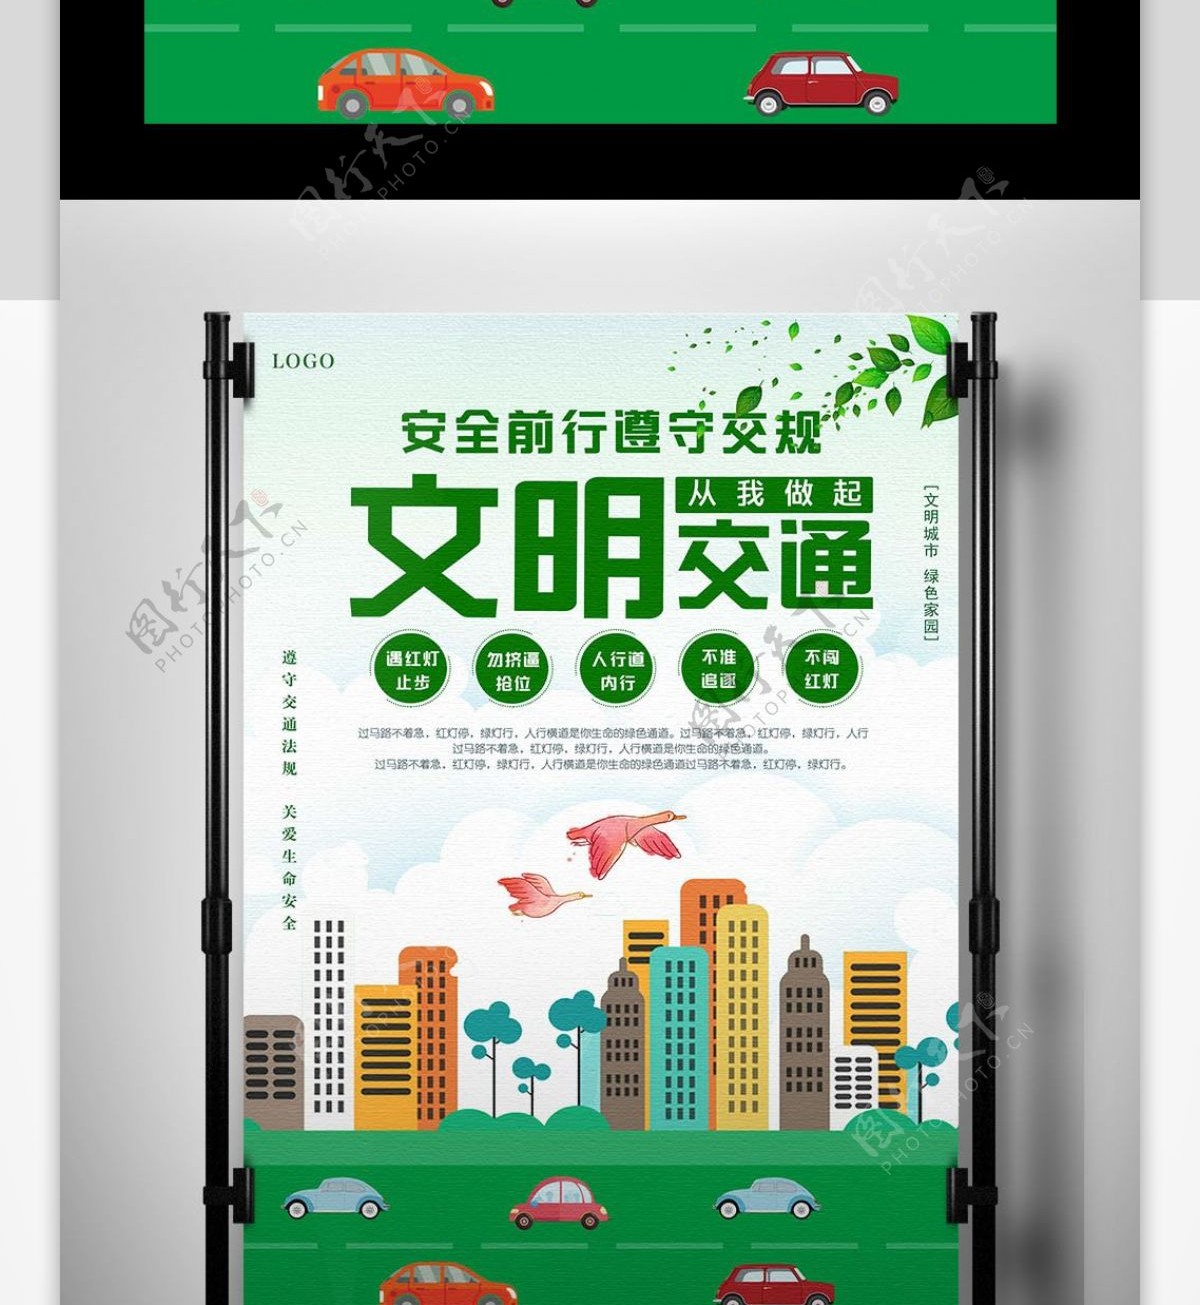 绿色背景文明交通公益宣传海报